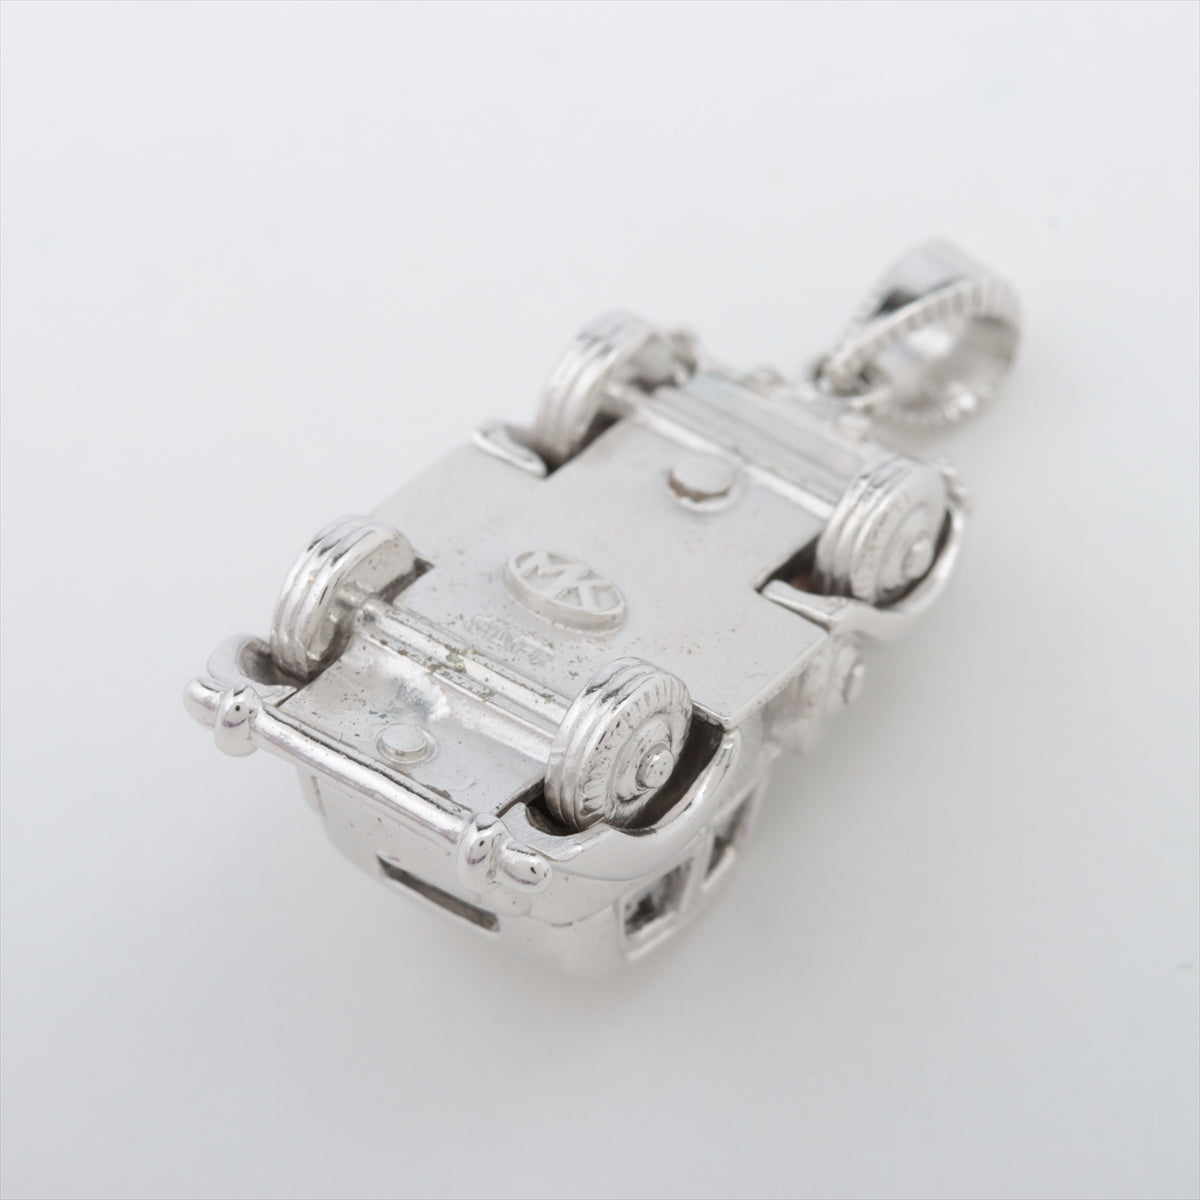 Mitsuo Kaji Necklace top 925 7.7g Silver Rolls Royce